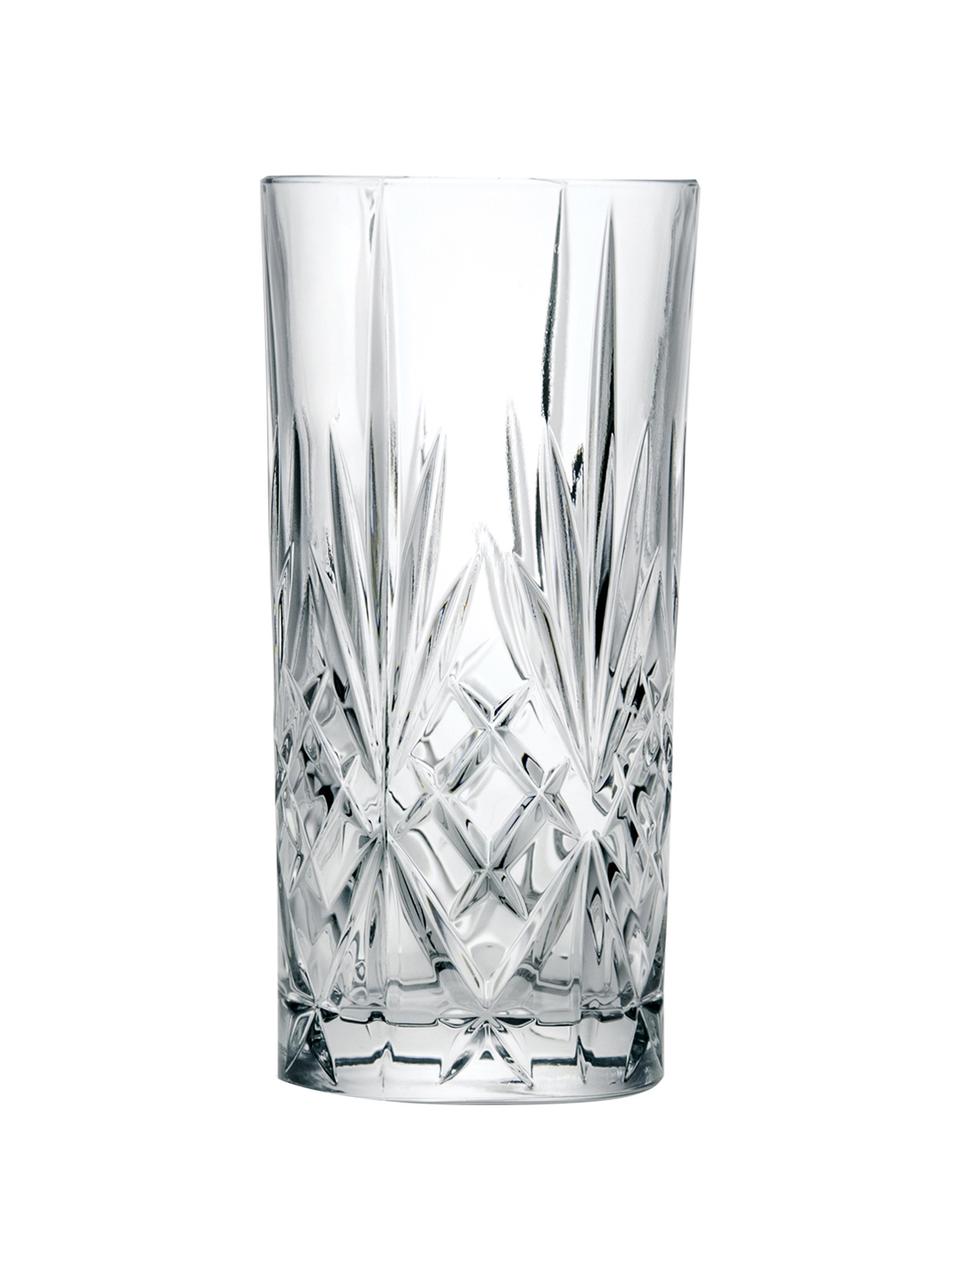 Kristall-Longdrinkgläser Melodia mit Reliefmuster, 6er-Set, Kristallglas, Transparent, Ø 7 x H 15 cm